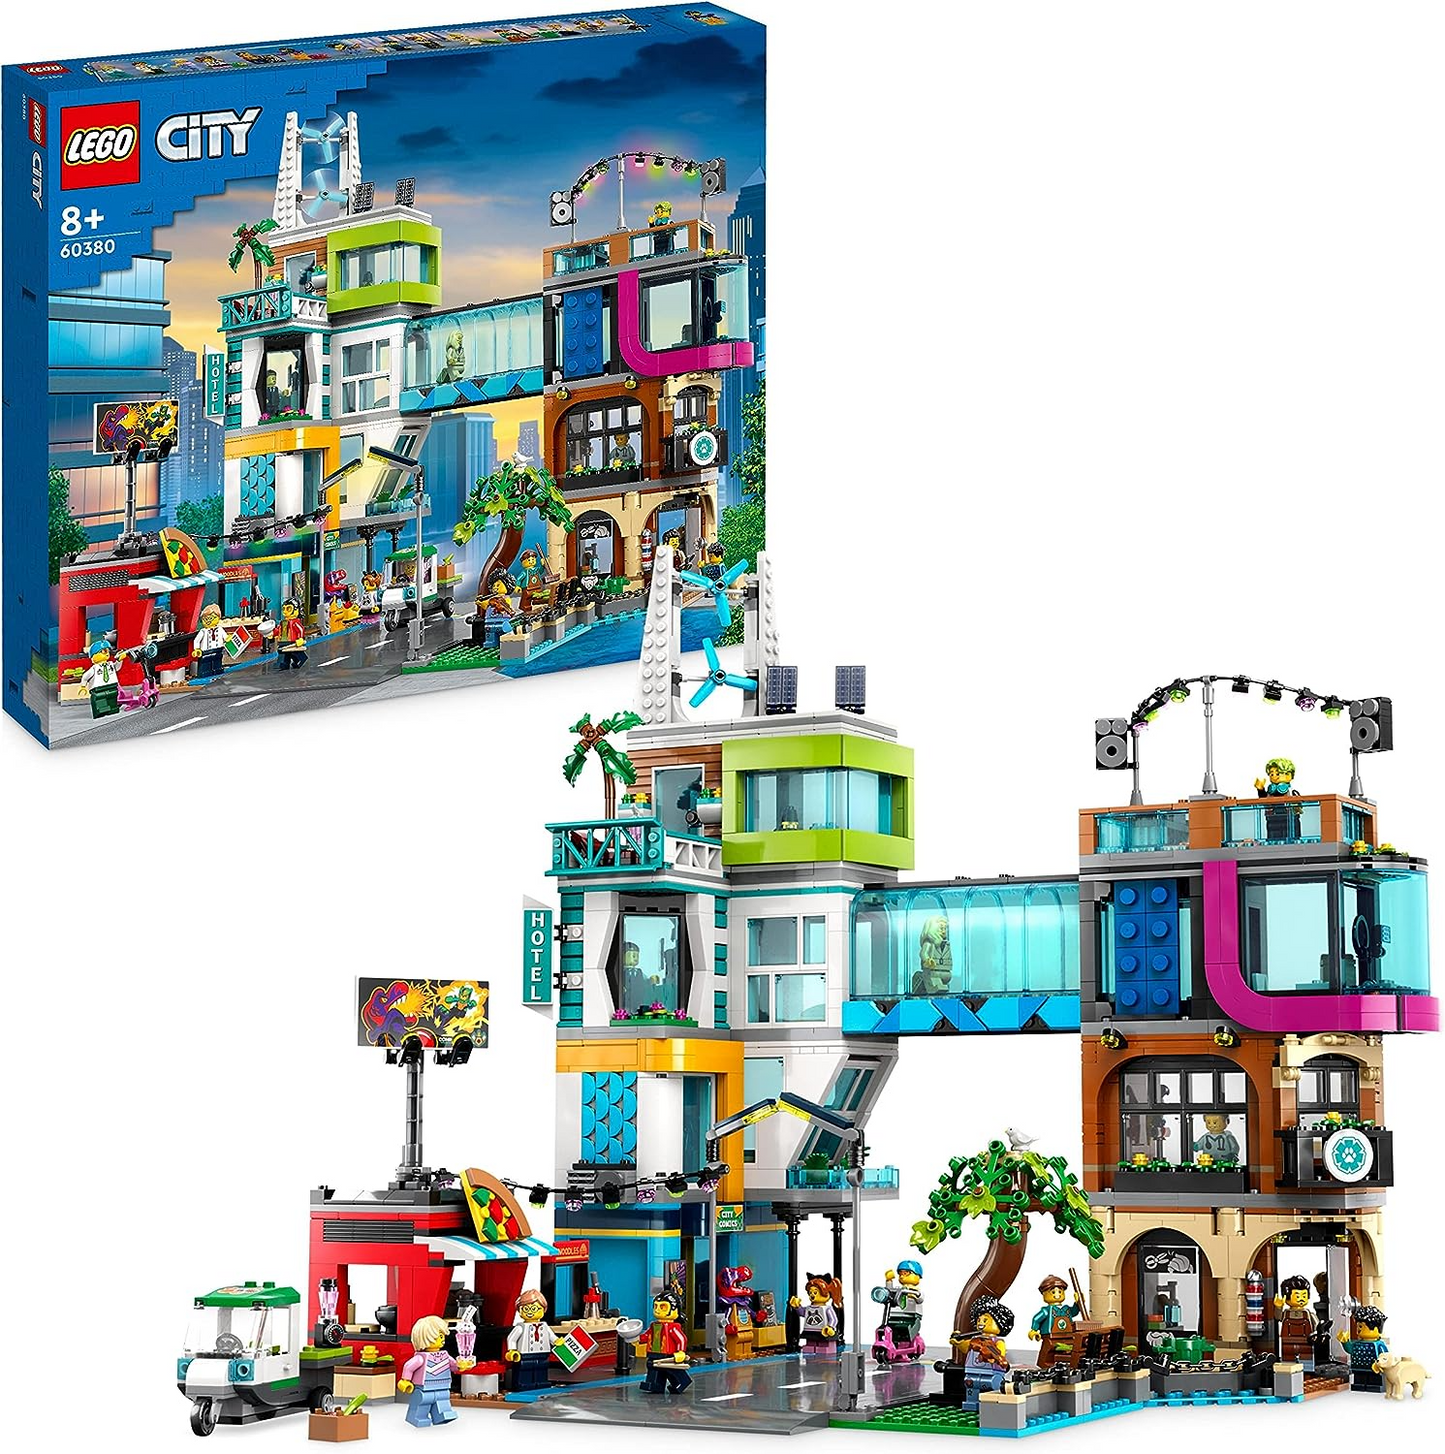 LEGO 60380 Conjunto City Center, kit de construção de modelo com salas modulares reconfiguráveis, incluindo lojas de brinquedos, barbeiro, estúdio Vlogger, hotel e discoteca na cobertura com 14 minifiguras